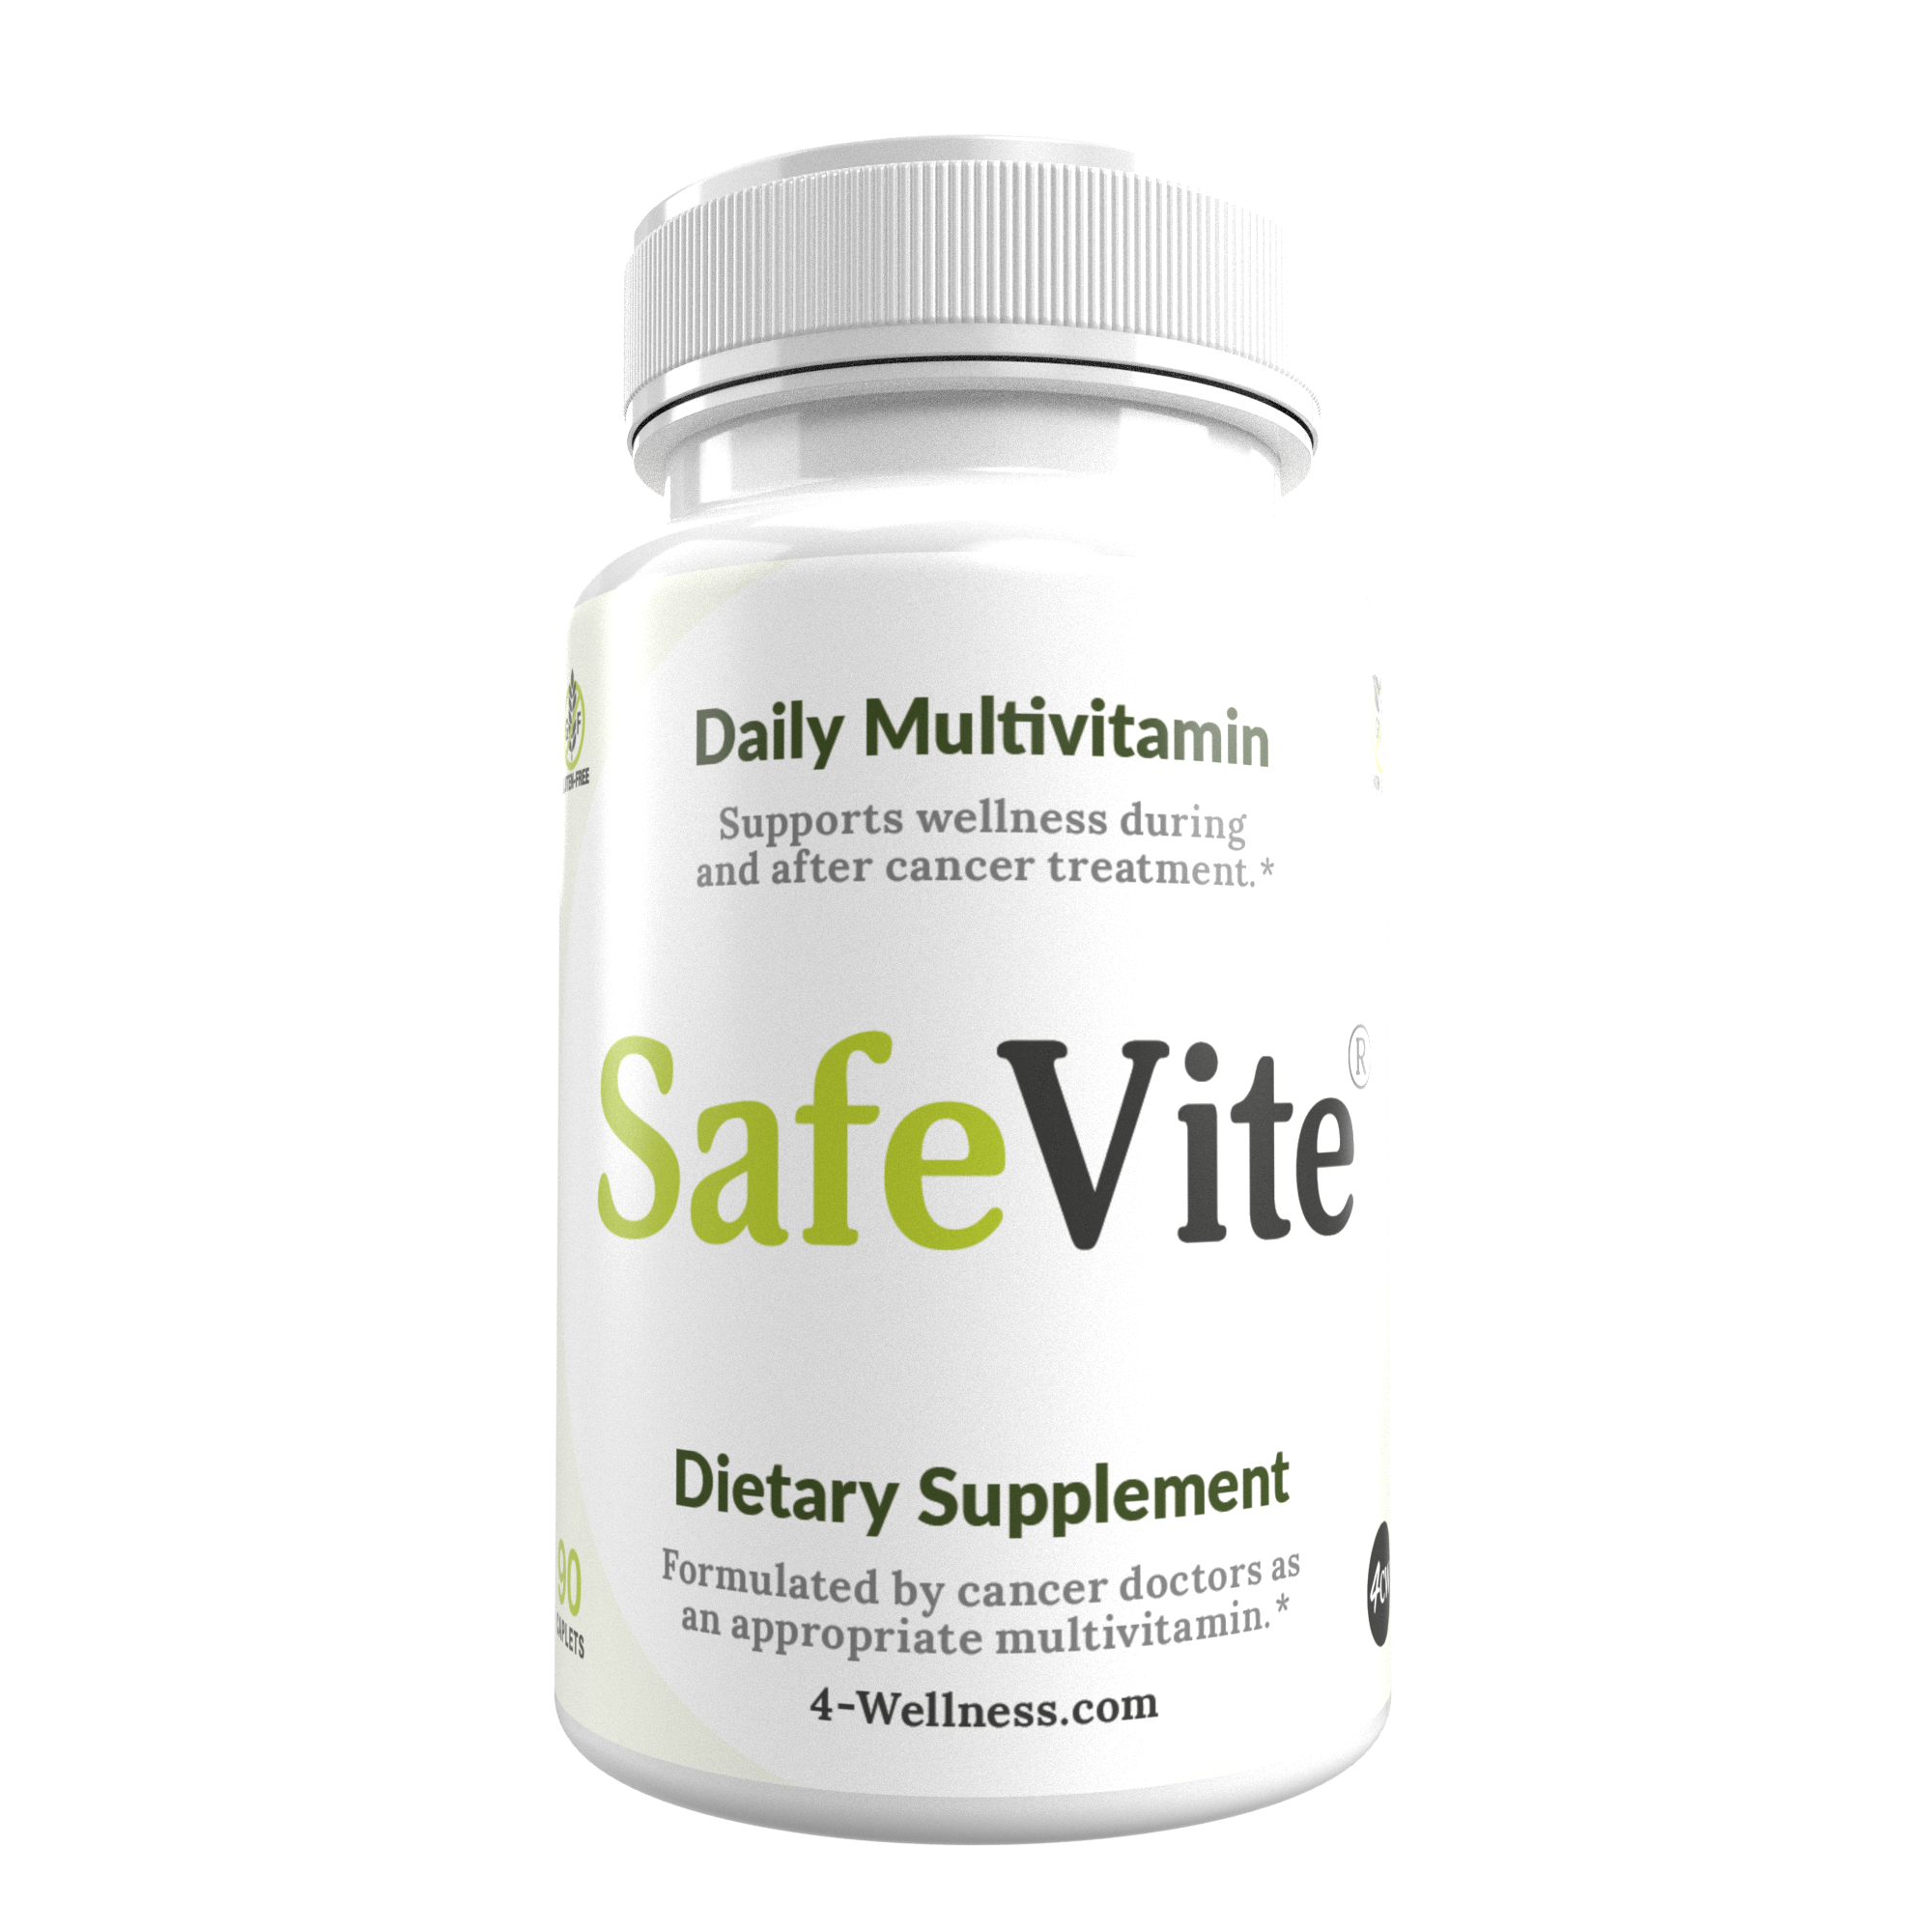 SafeVite Daily Multivitamin